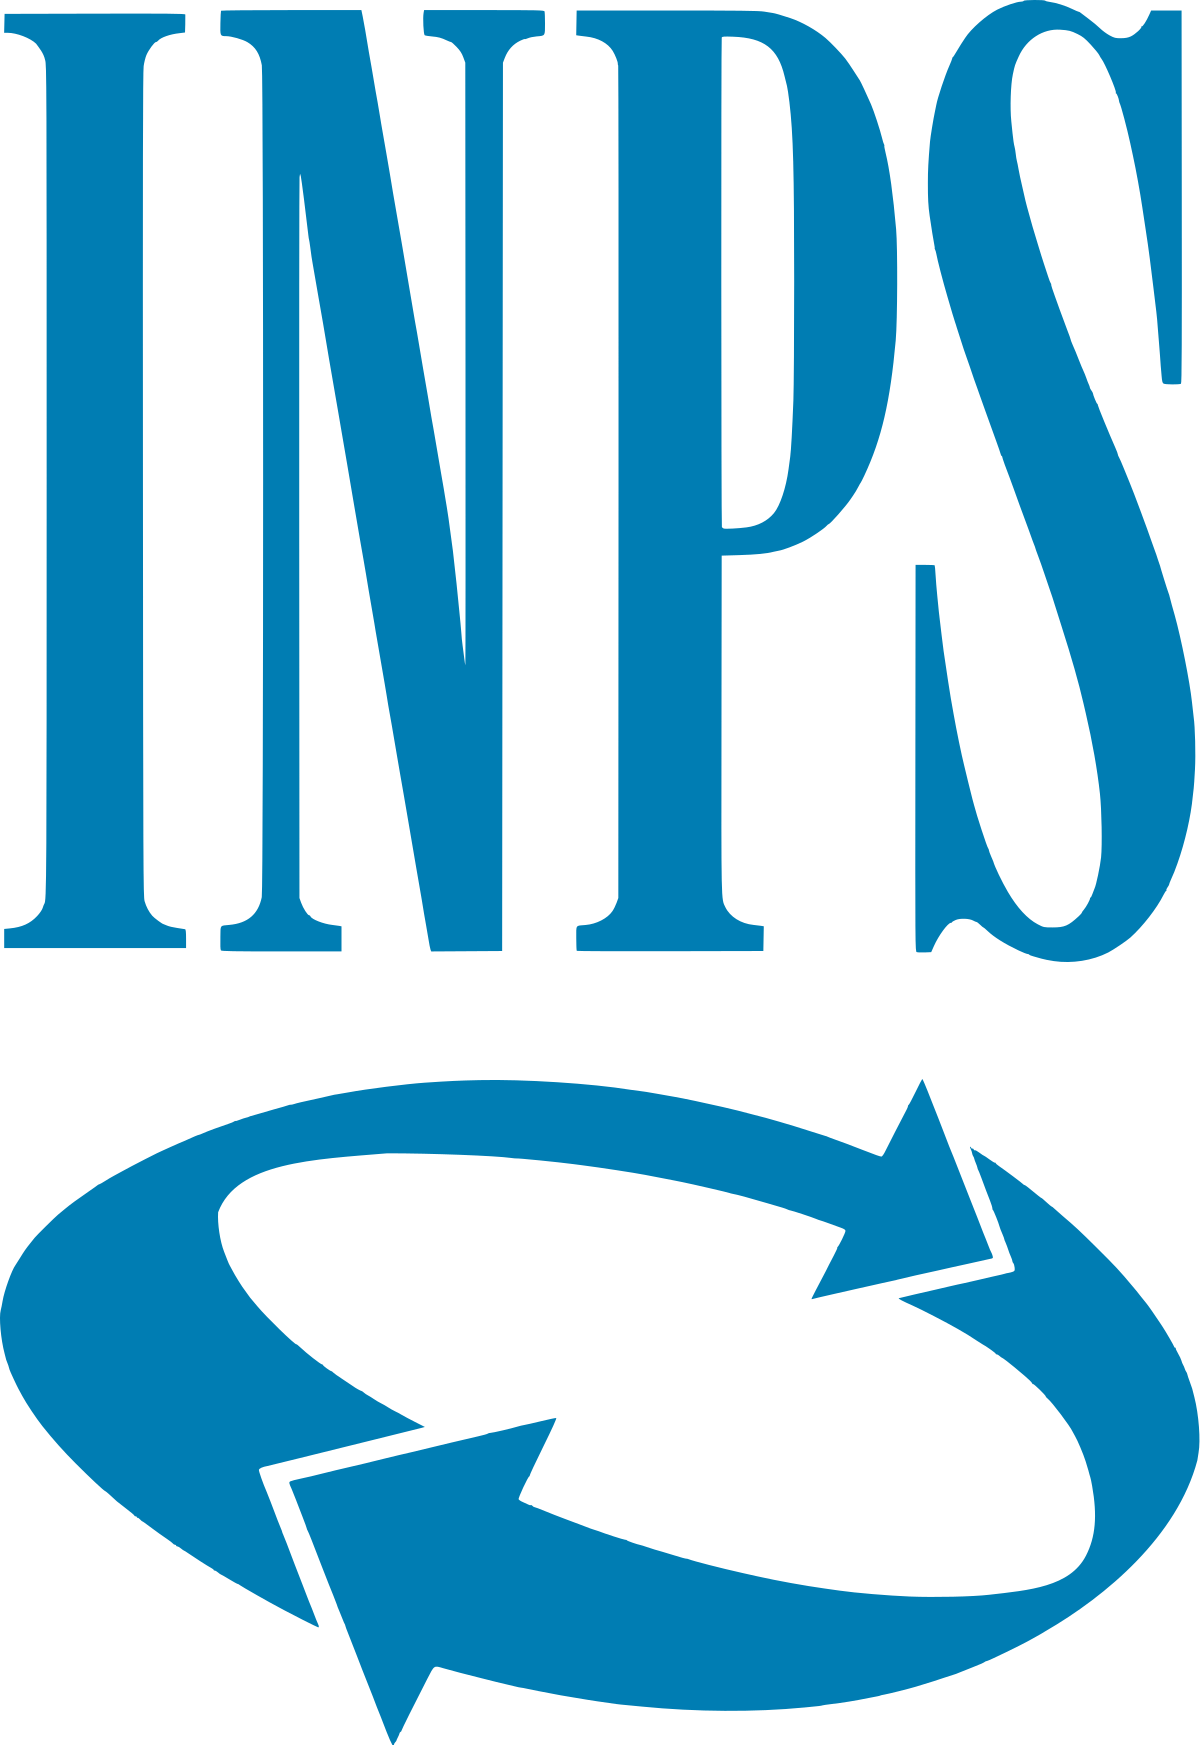 Accesso a sportelli INPS solo su prenotazione dal 3 febbraio 2020